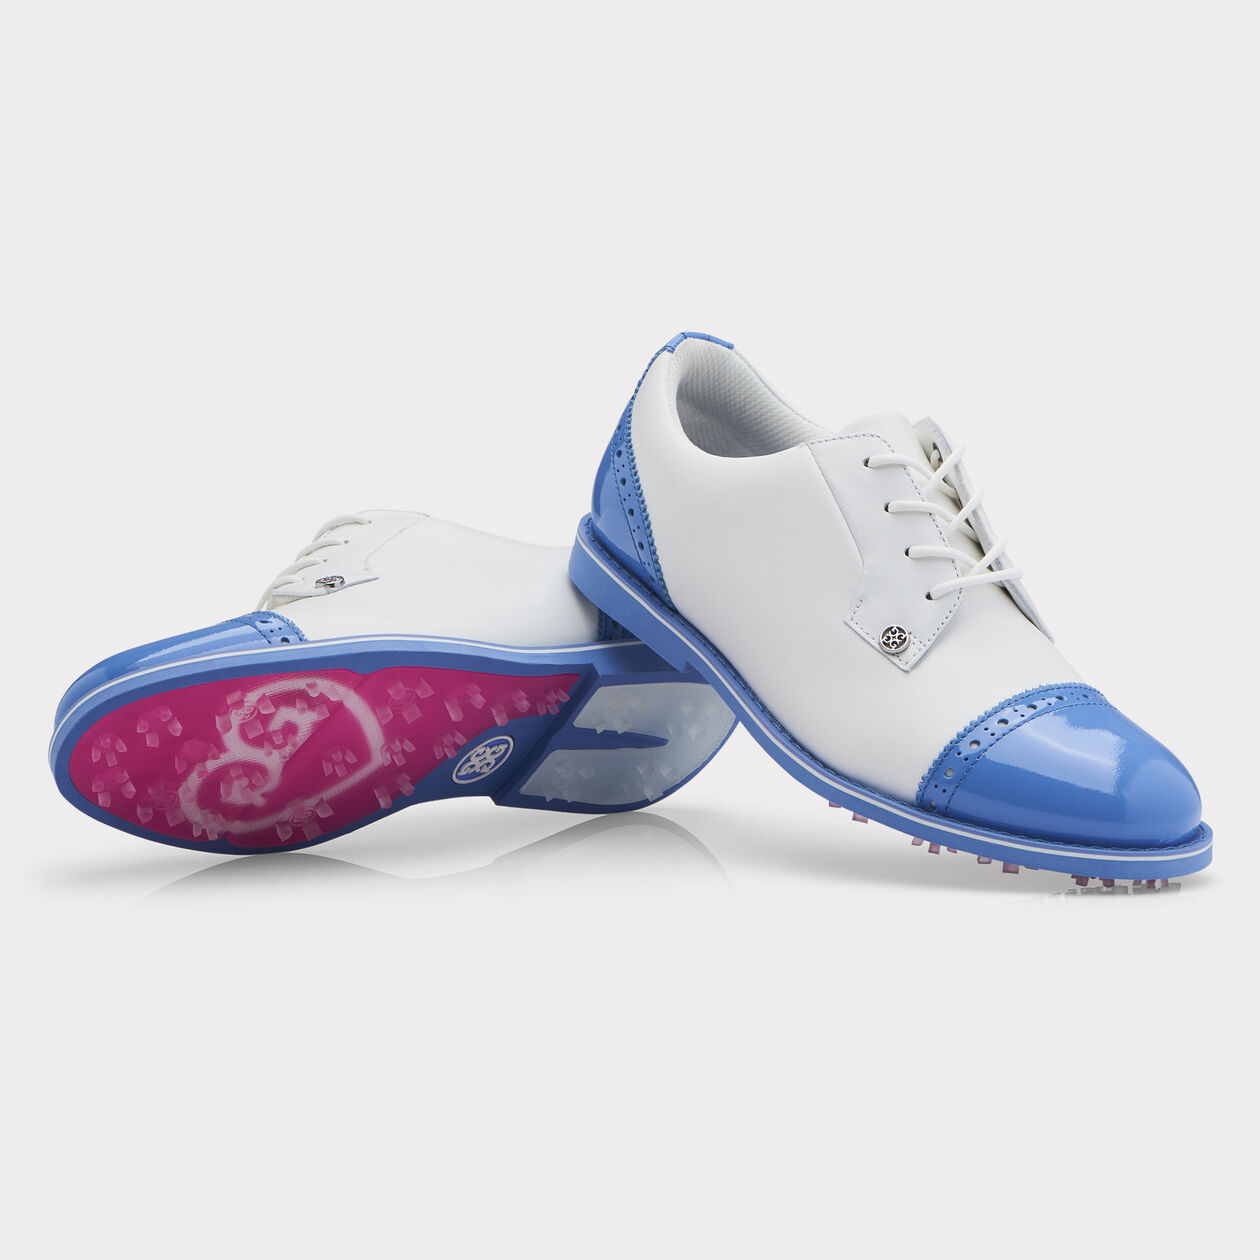 G/FORE Women's Cap Toe Gallivanter Golf Shoe, Golf Equipment: Clubs,  Balls, Bags